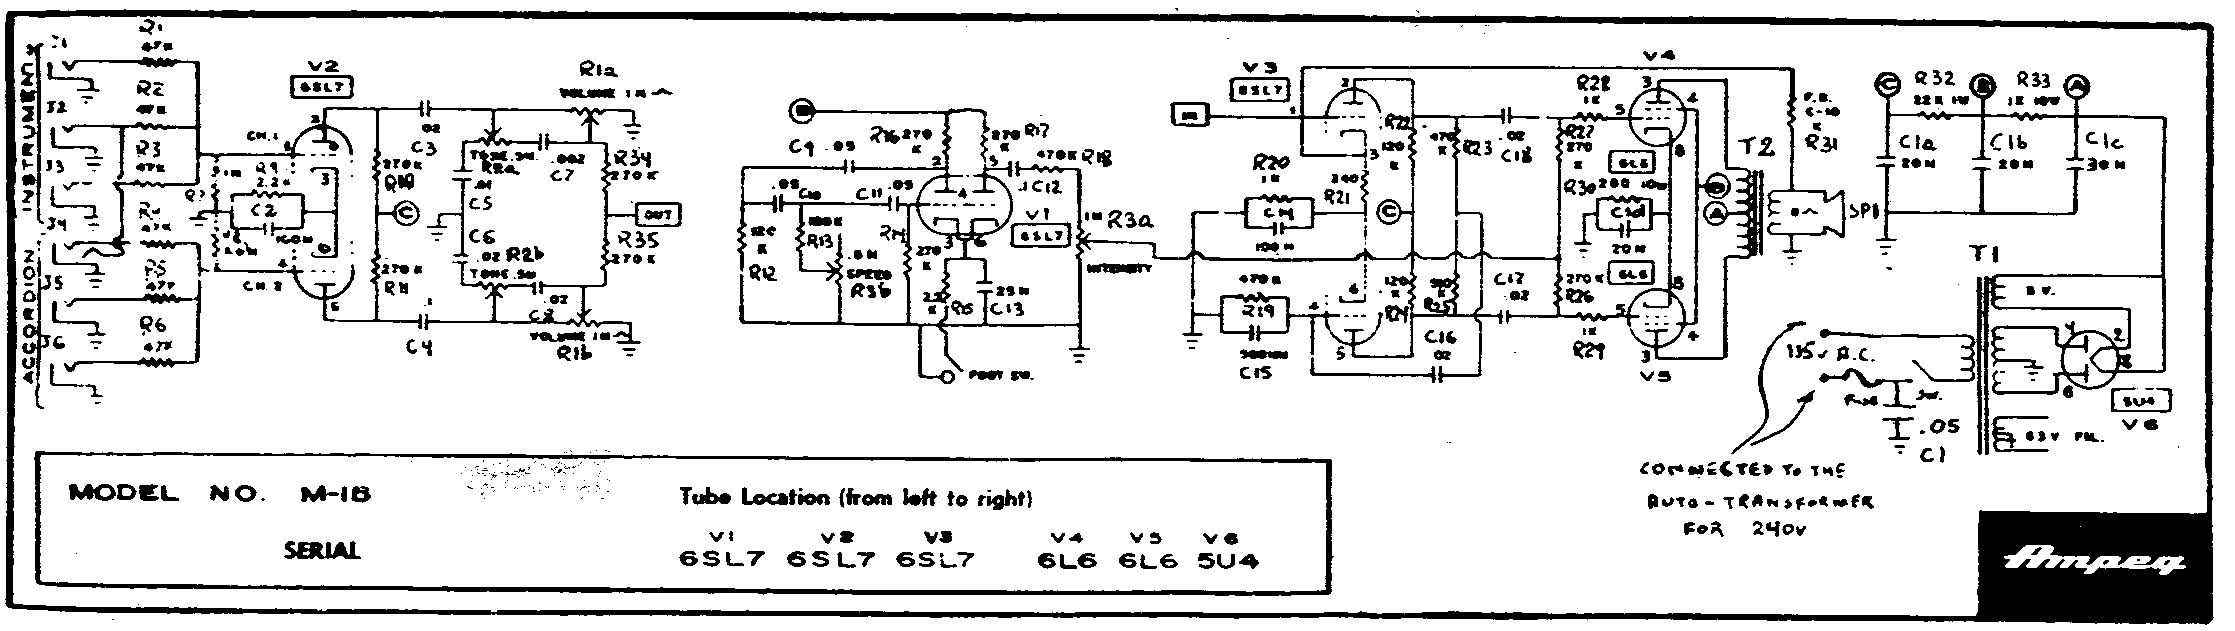 Ampeg M-1B Schematic